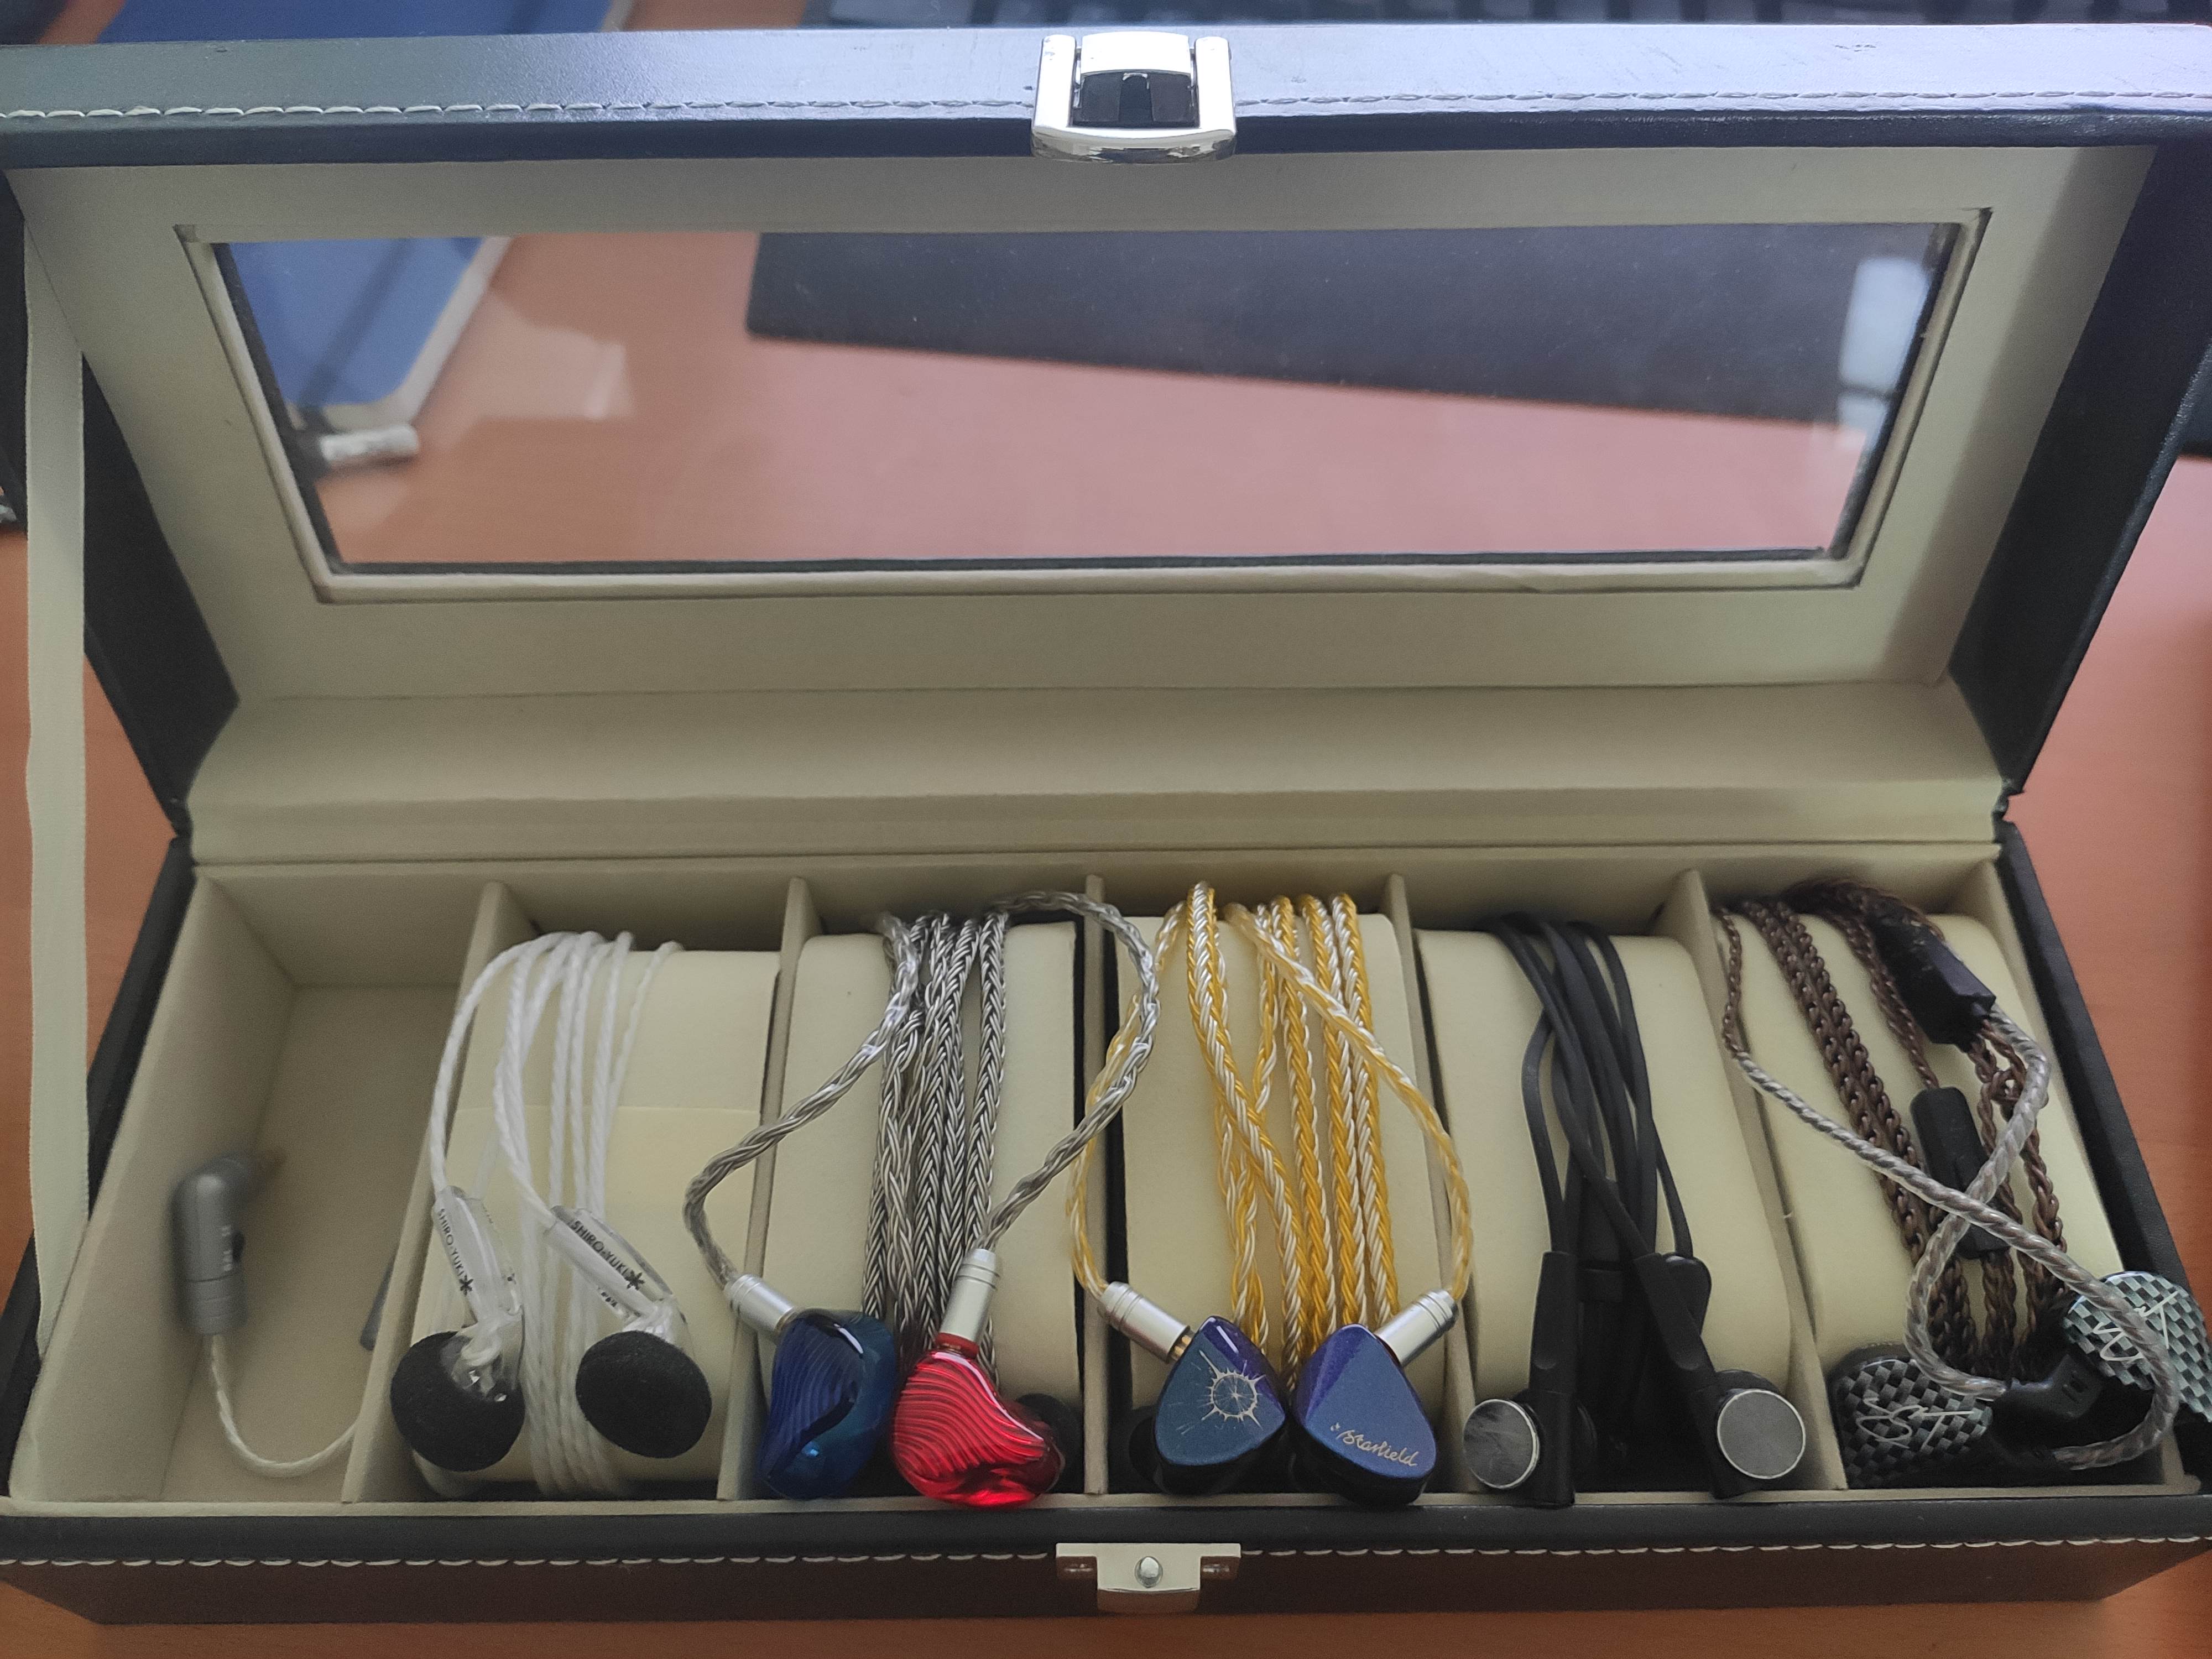 IEM Hard Case Waterproof In Ear Monitor Earphone Case Storage Box